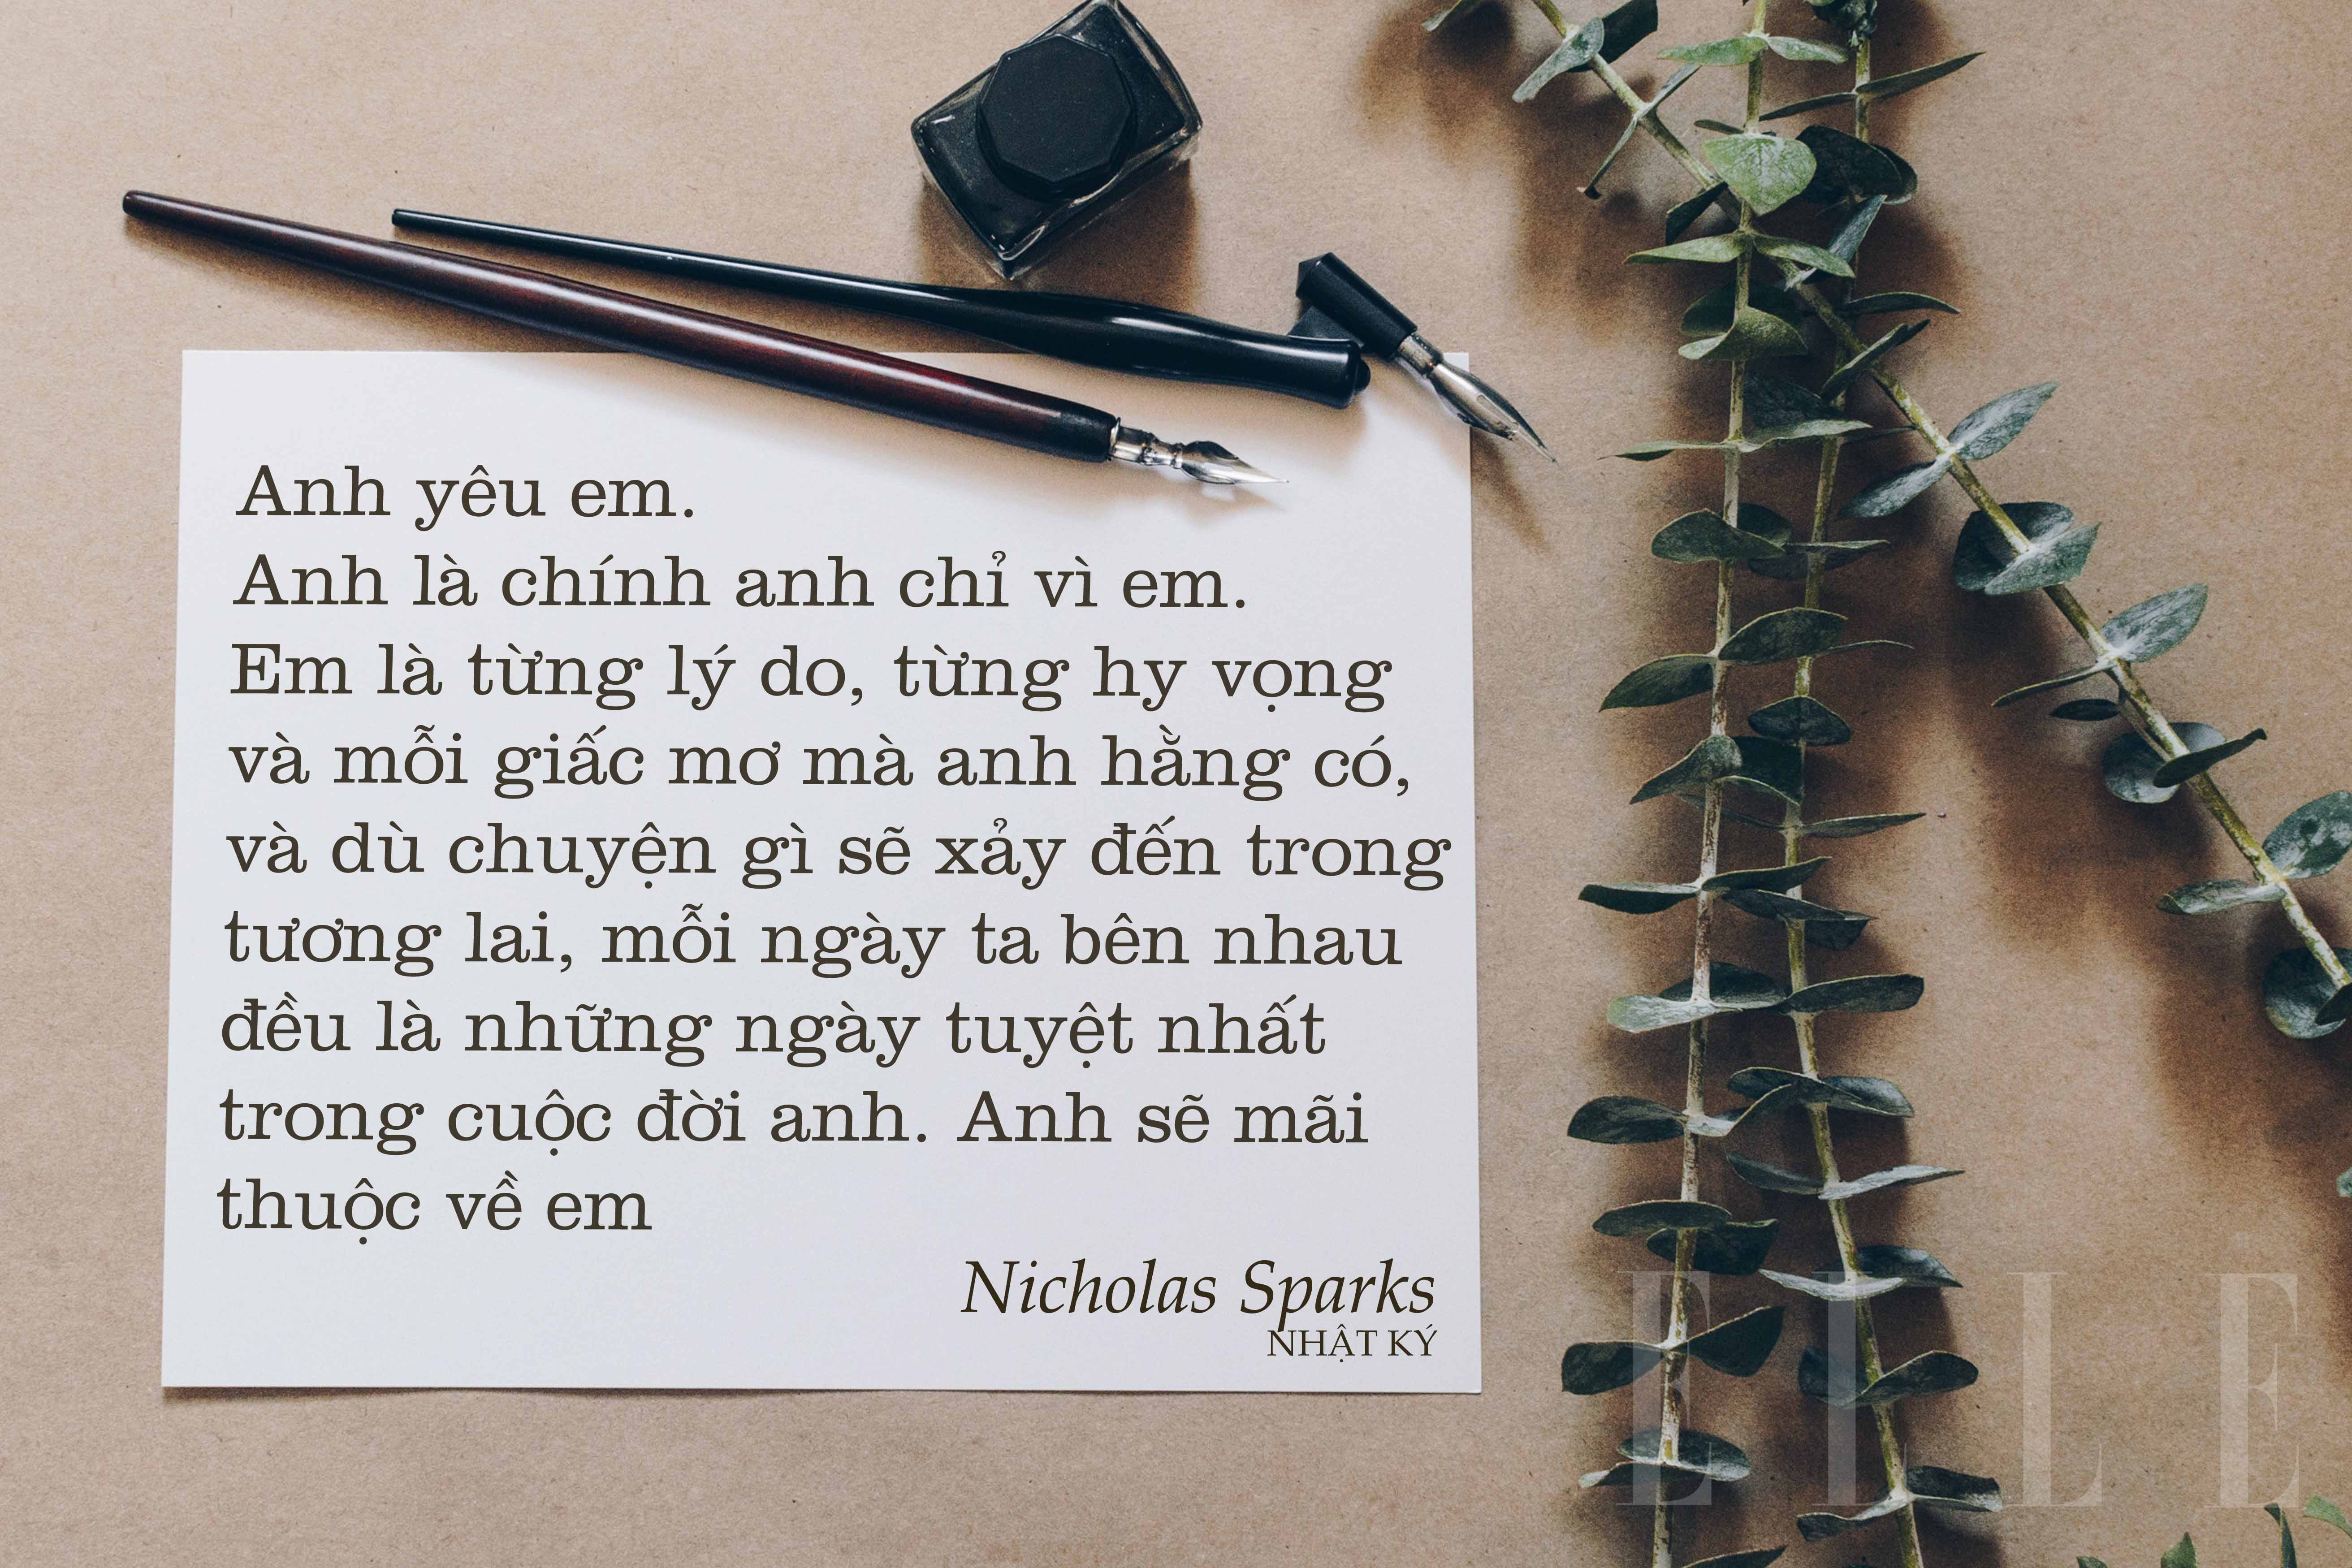 Nicholas Sparks 3